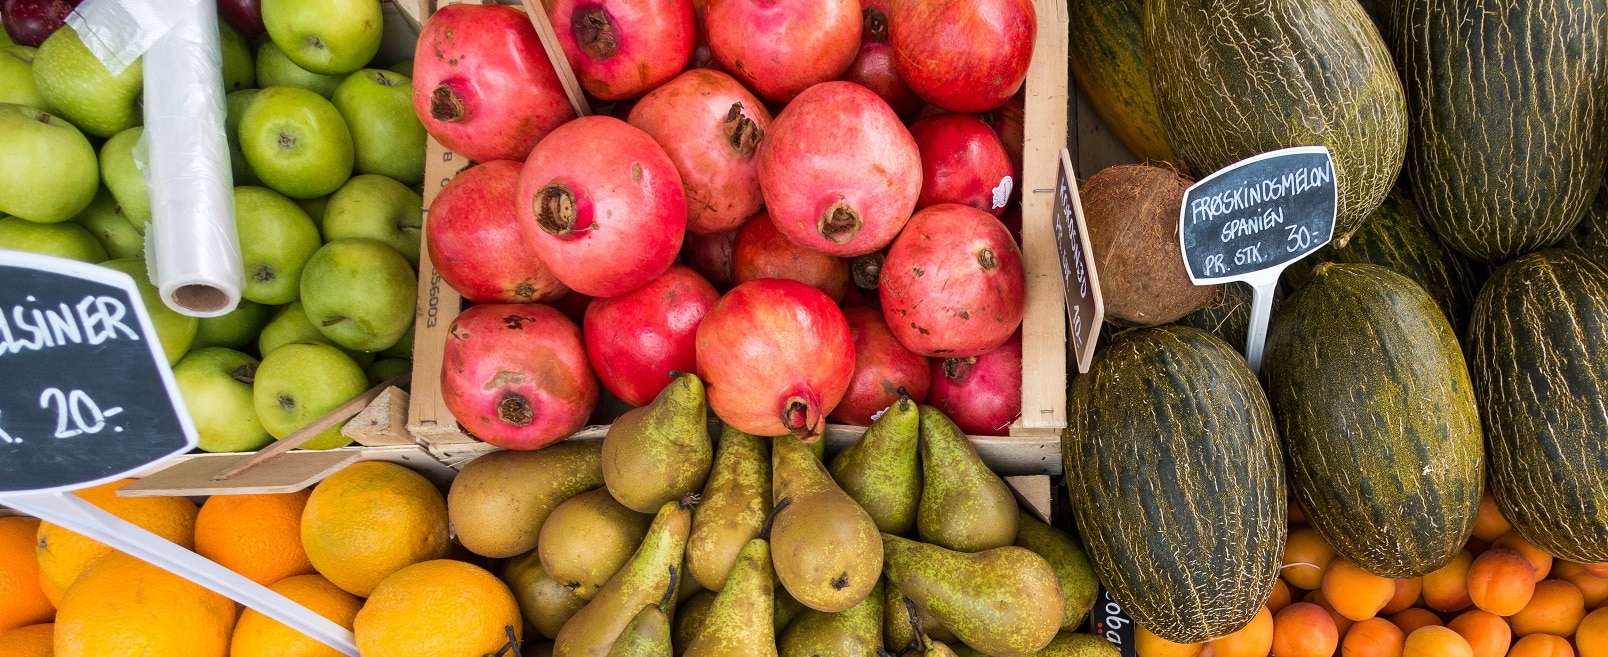 Fresh fruits at a market stall